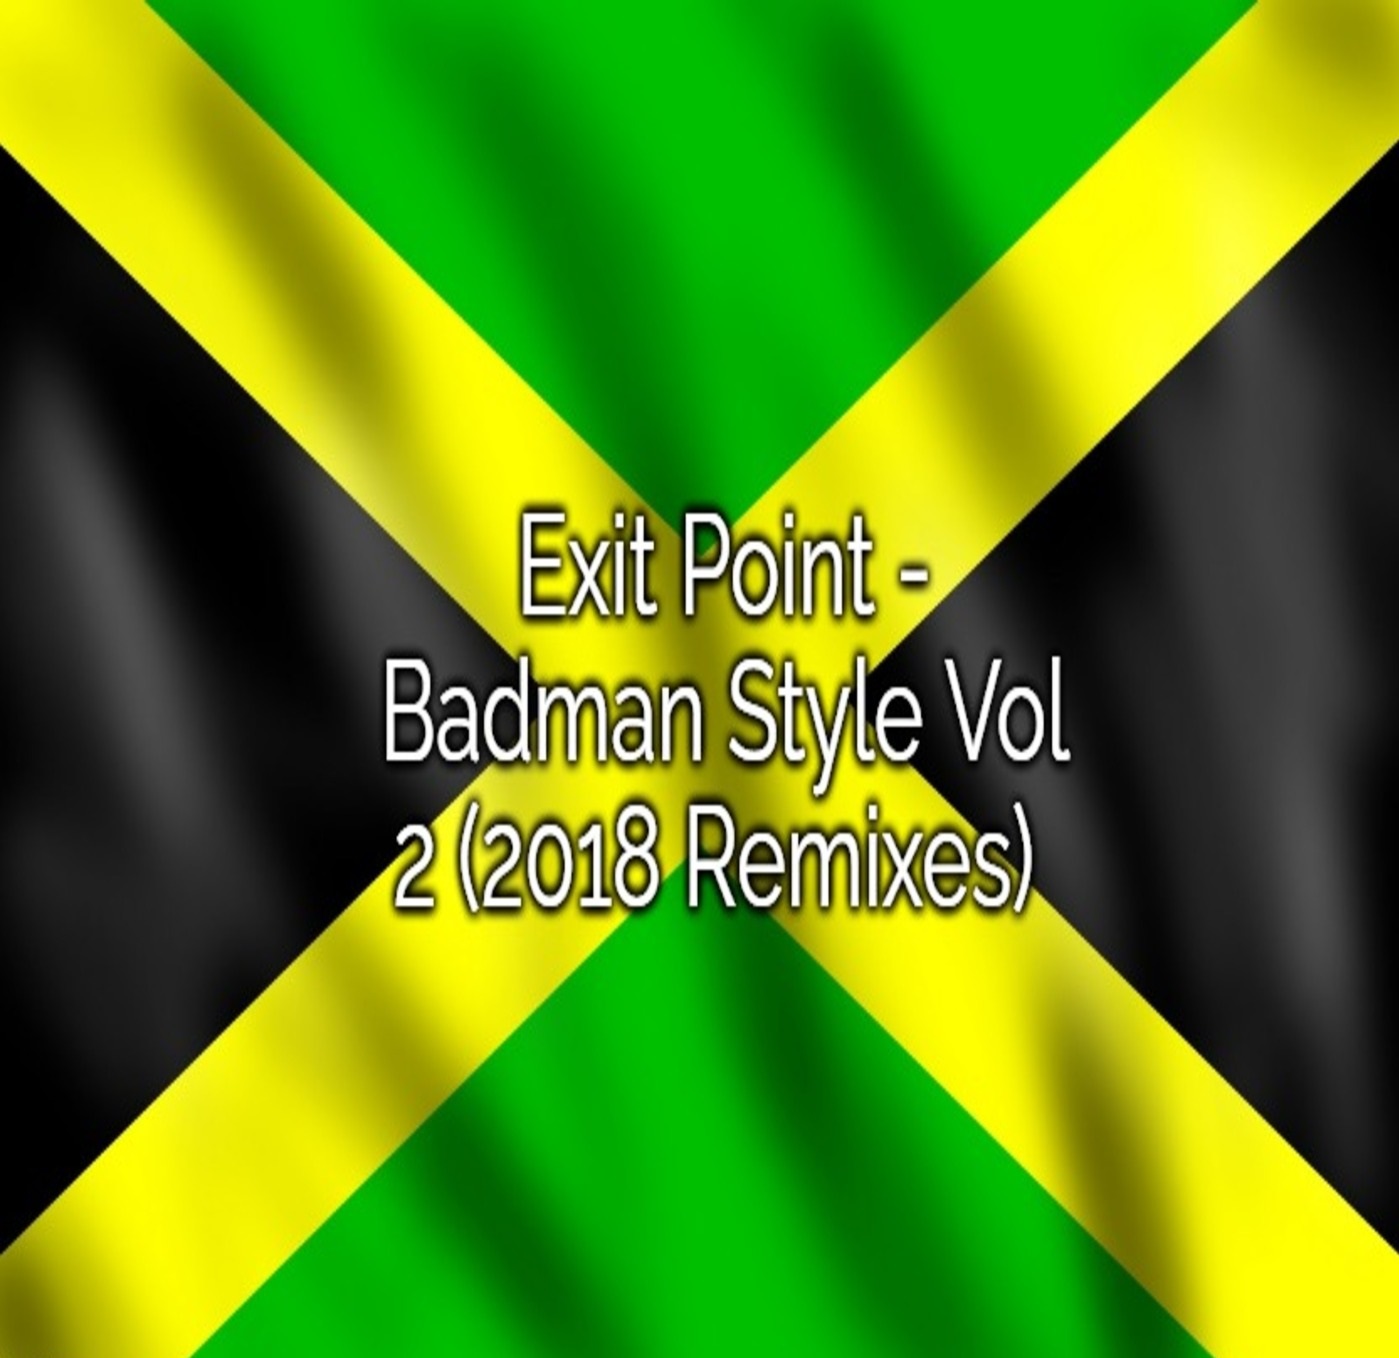 View Track : Exit Point - Badman Style (Rez Remix)